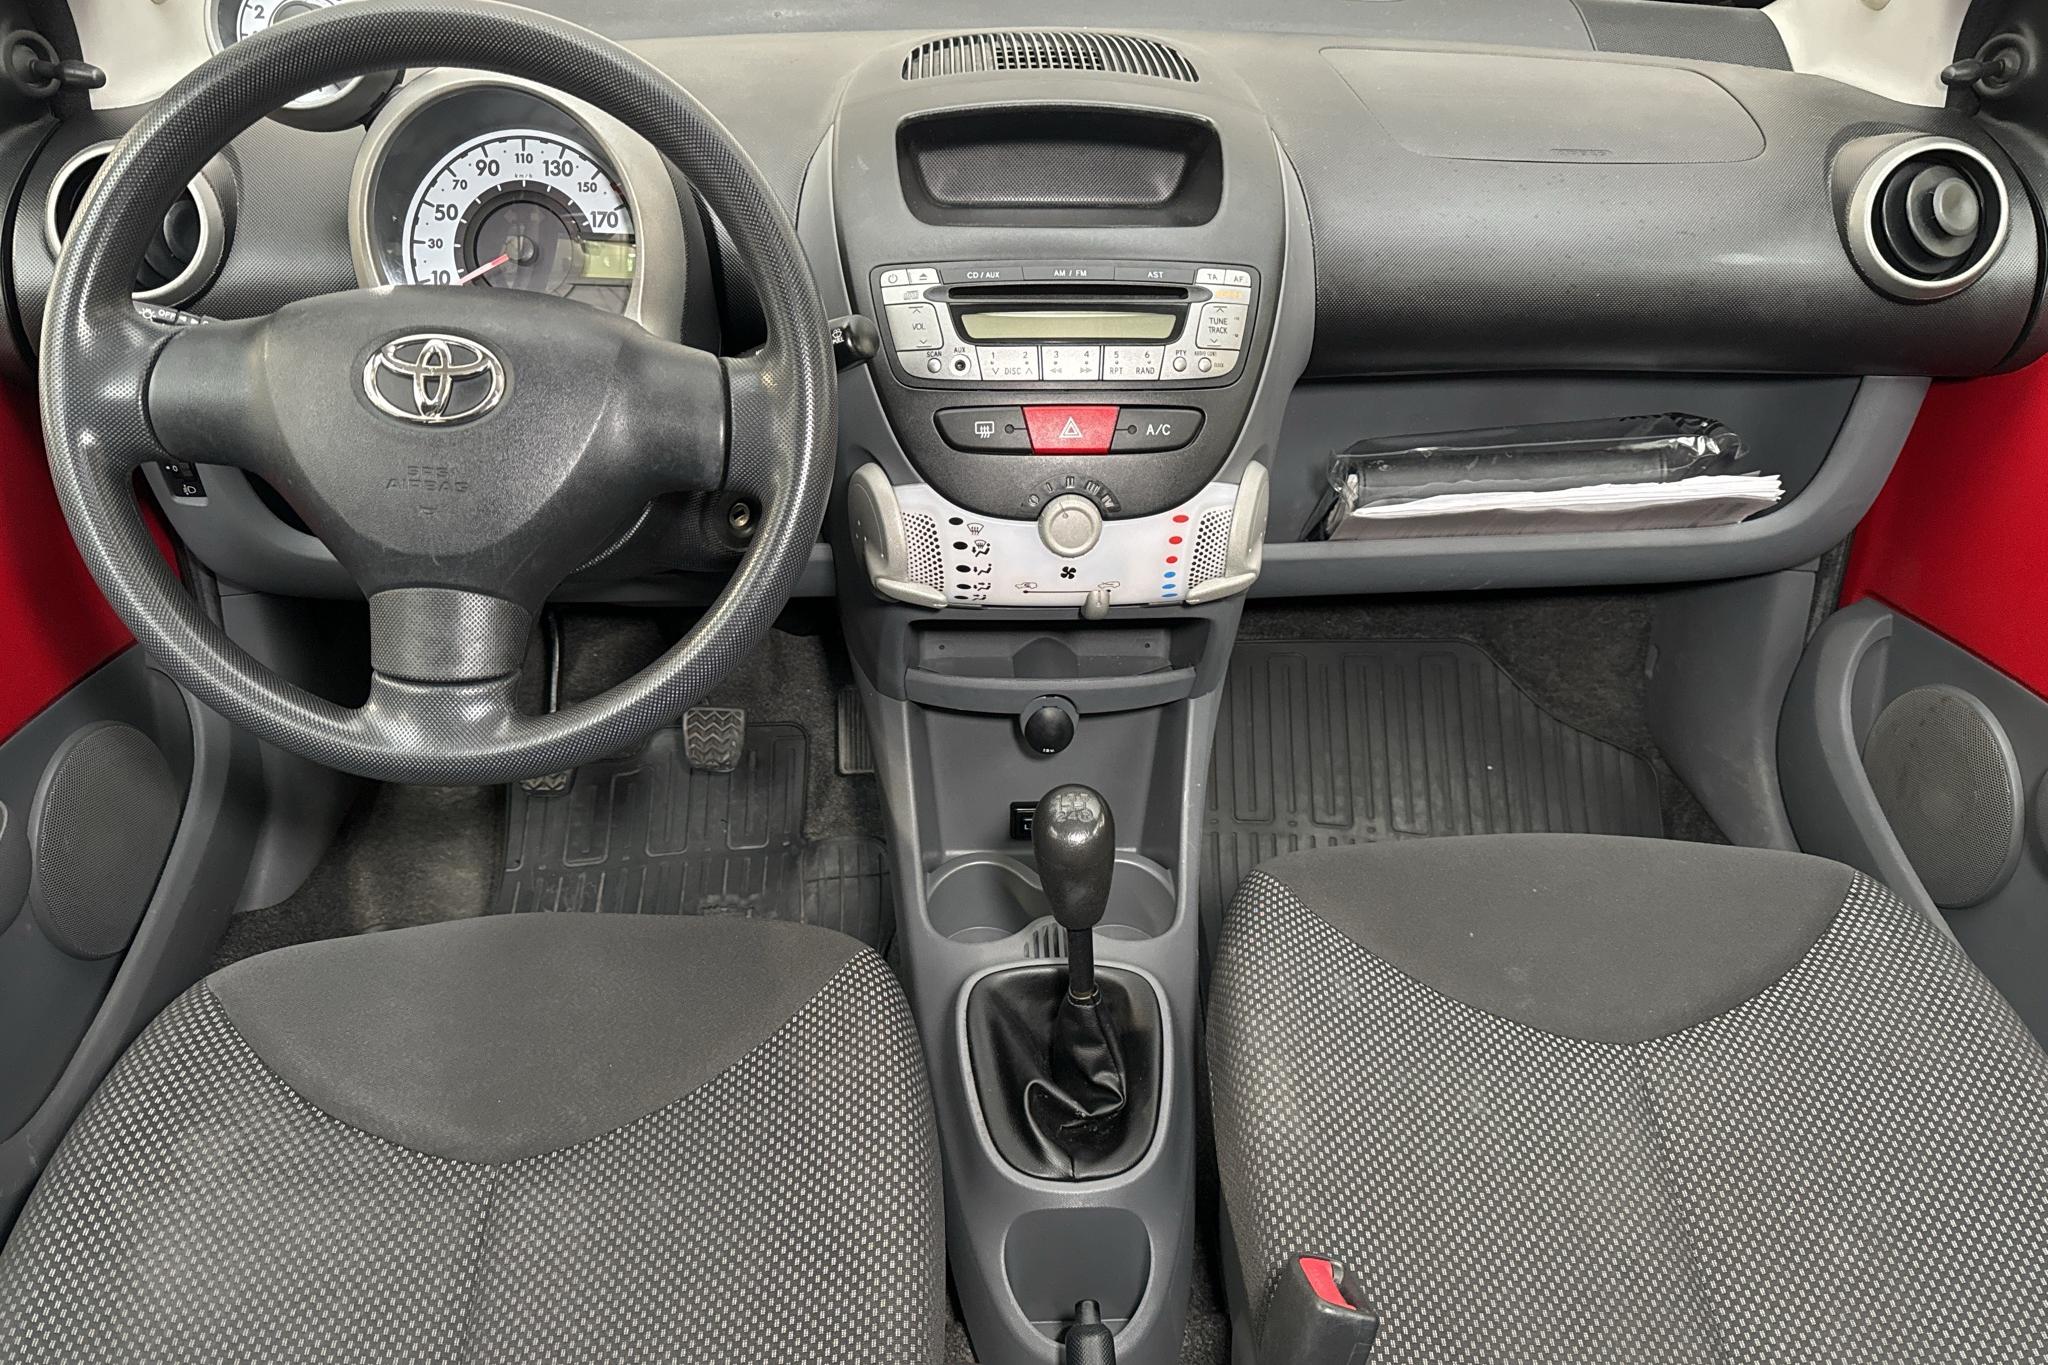 Toyota Aygo 1.0 VVT-i 5dr (68hk) - 11 887 mil - Manuell - röd - 2010